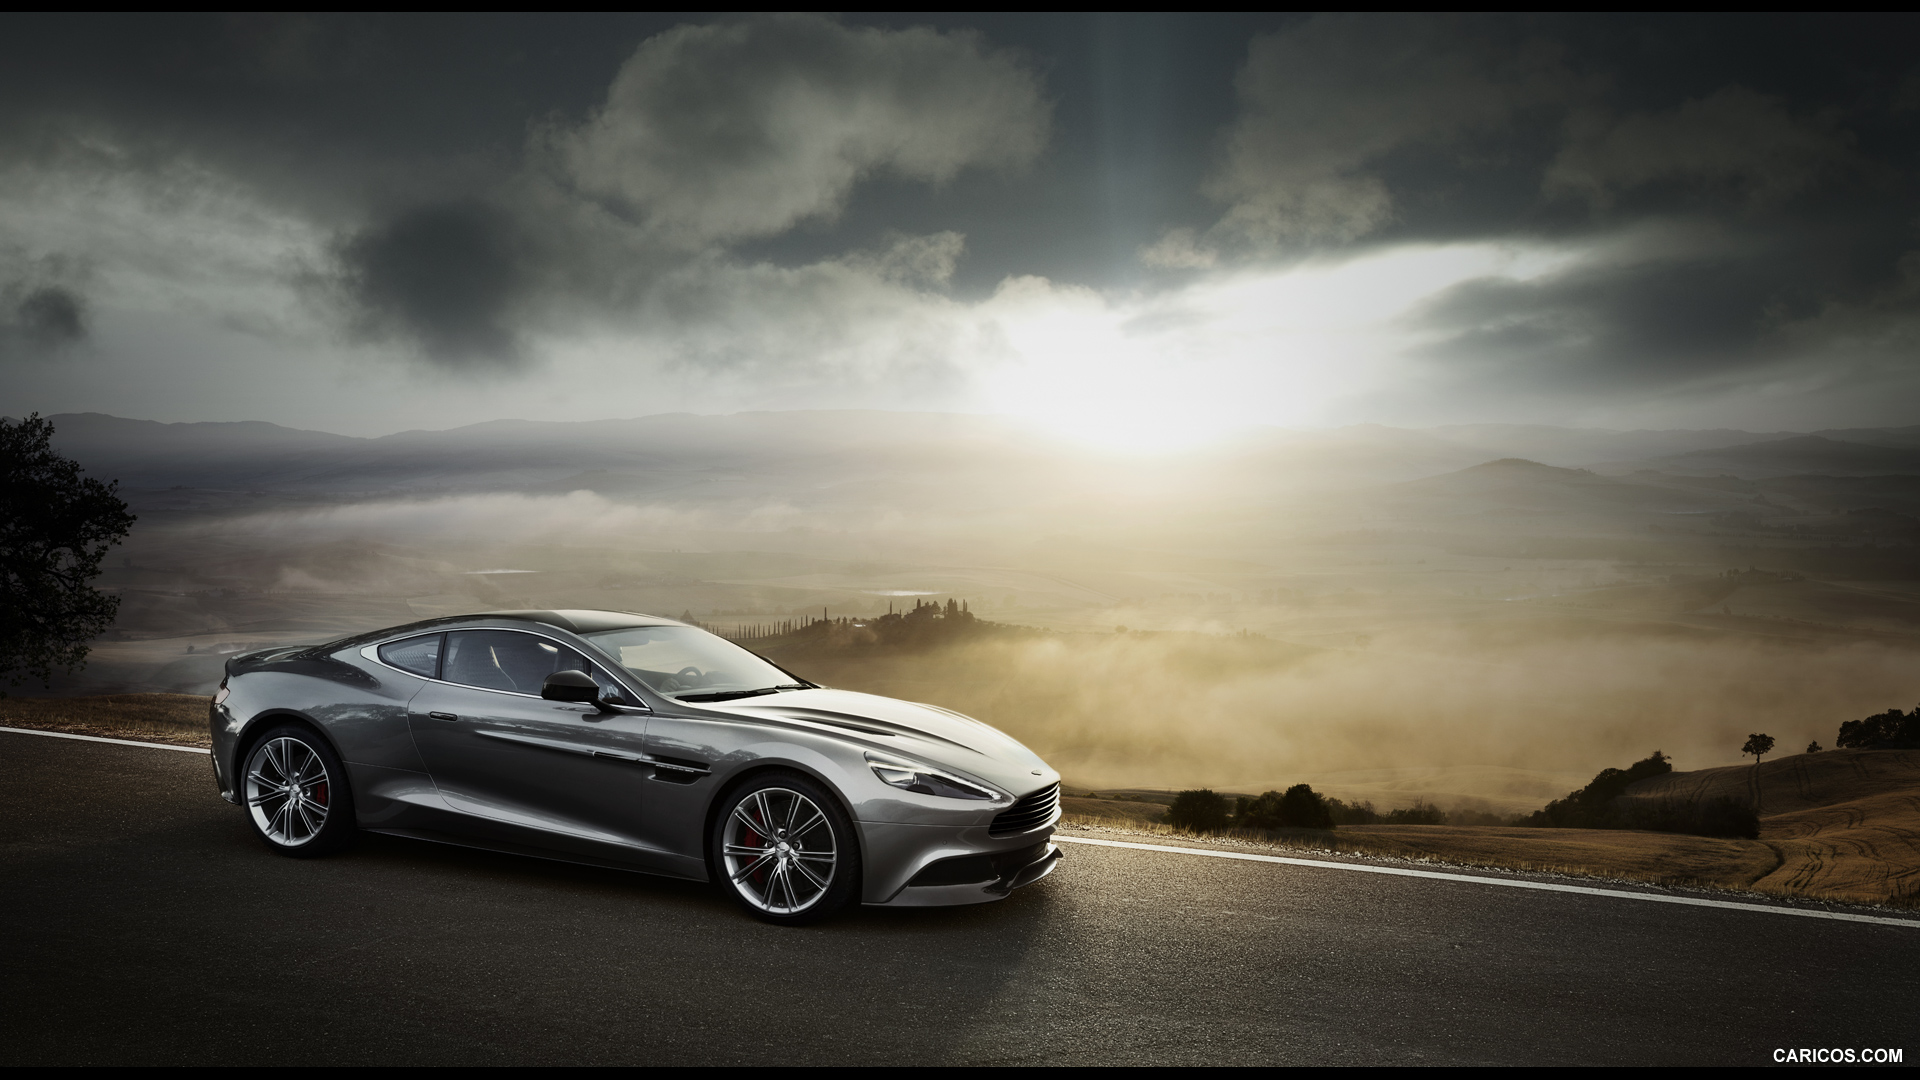 Aston Martin | Caricos.com